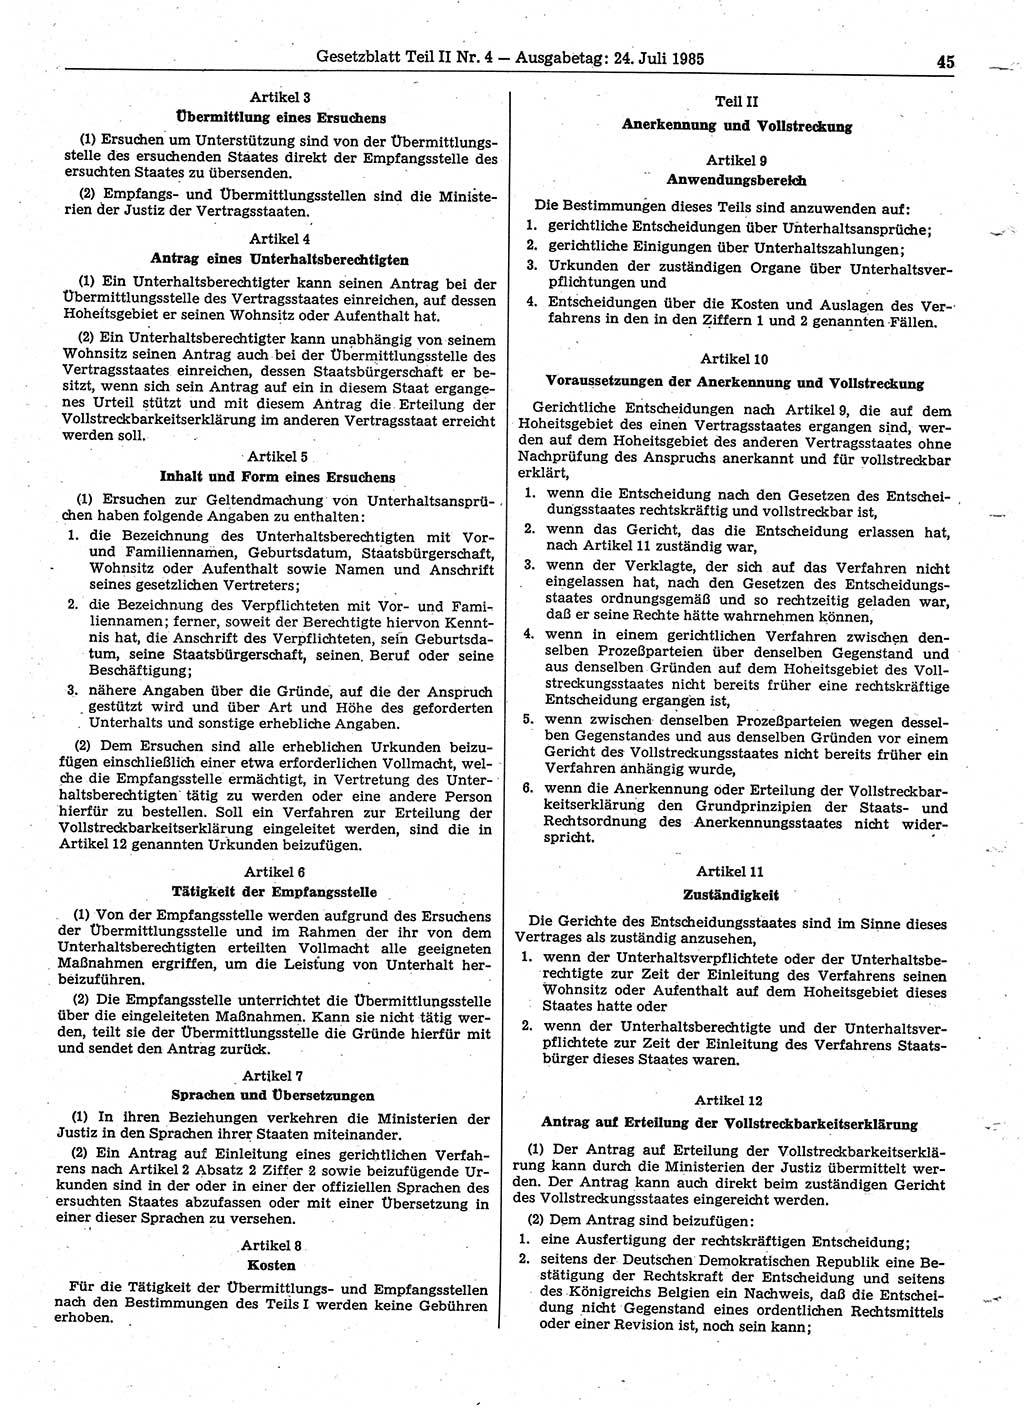 Gesetzblatt (GBl.) der Deutschen Demokratischen Republik (DDR) Teil ⅠⅠ 1985, Seite 45 (GBl. DDR ⅠⅠ 1985, S. 45)